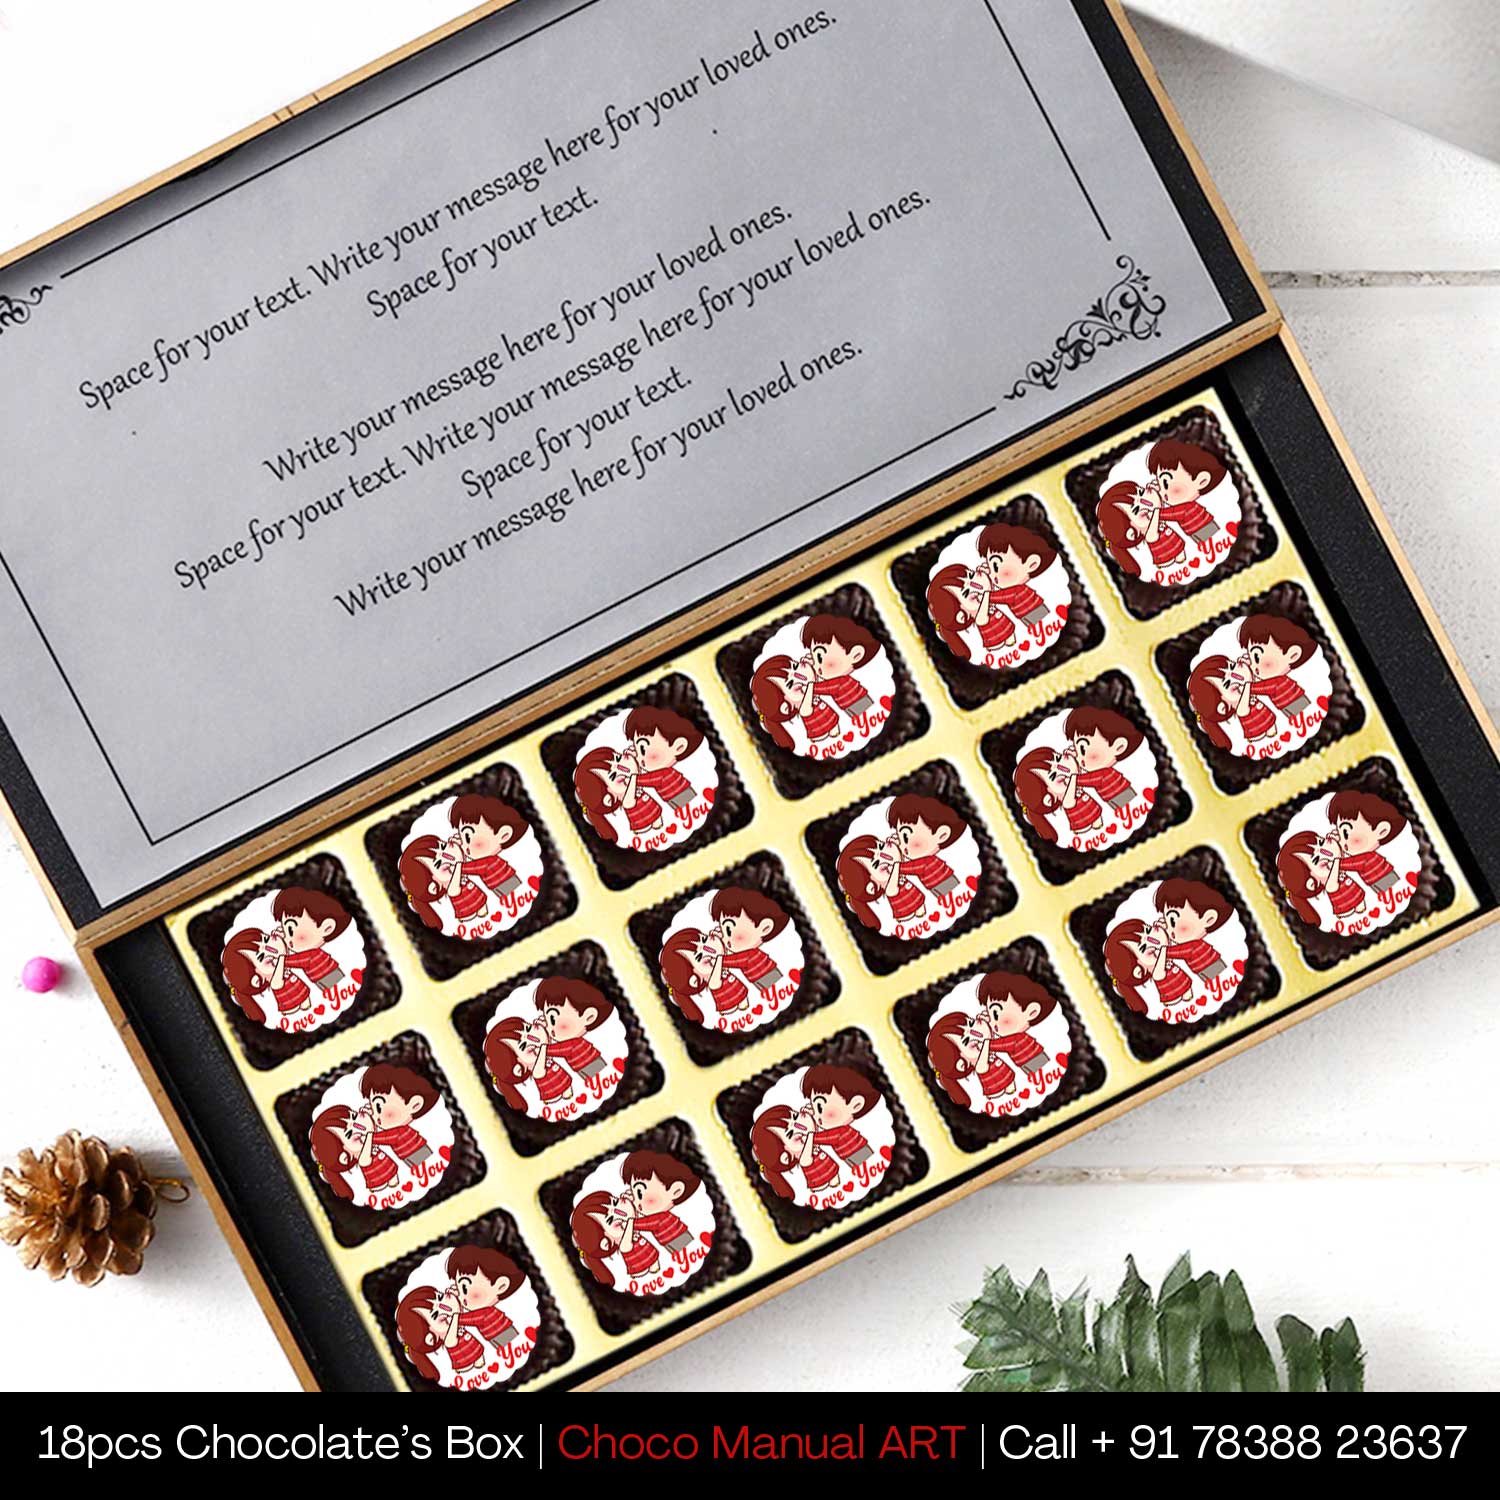  box of chocolates gift chocolate gift box online order love chocolate gift love chocolate